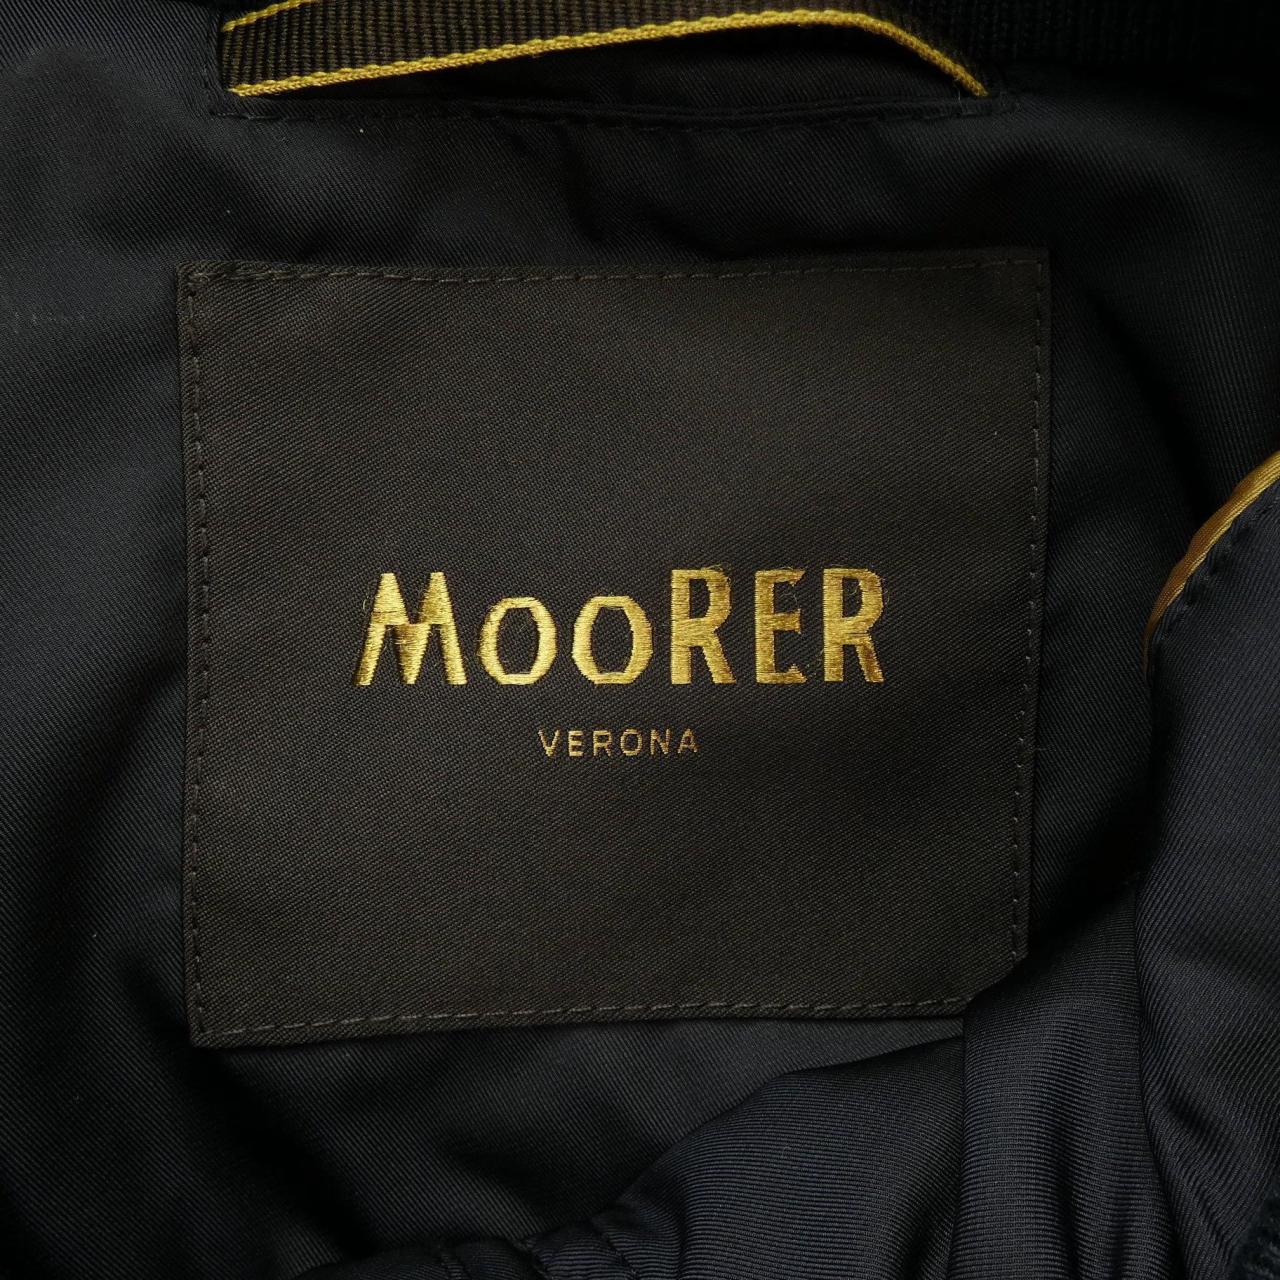 Mouret MOORER down jacket